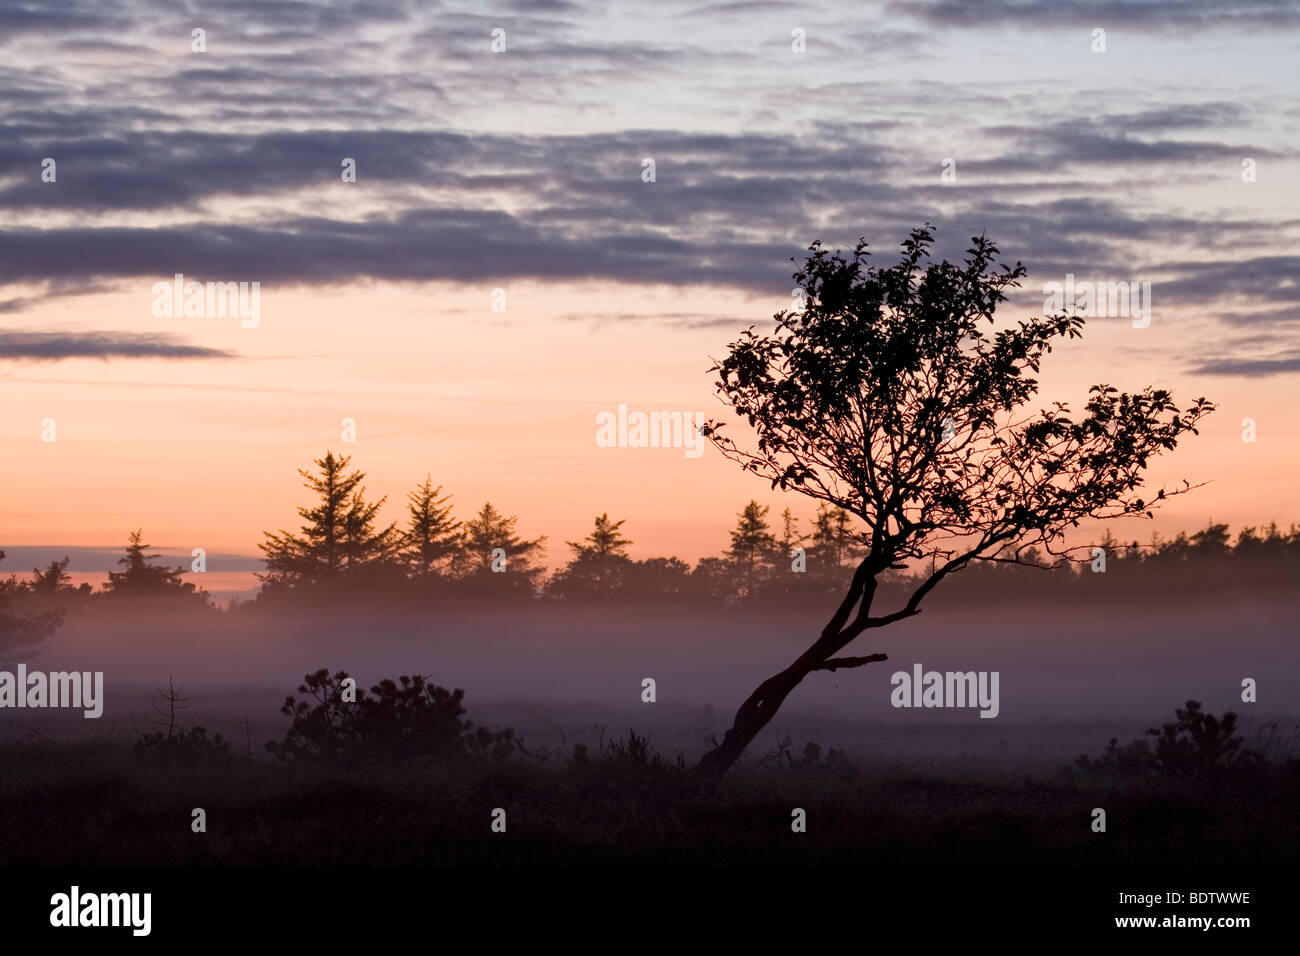 Laubbaum im Abendlicht / Decidous tree in sunset / Stock Photo